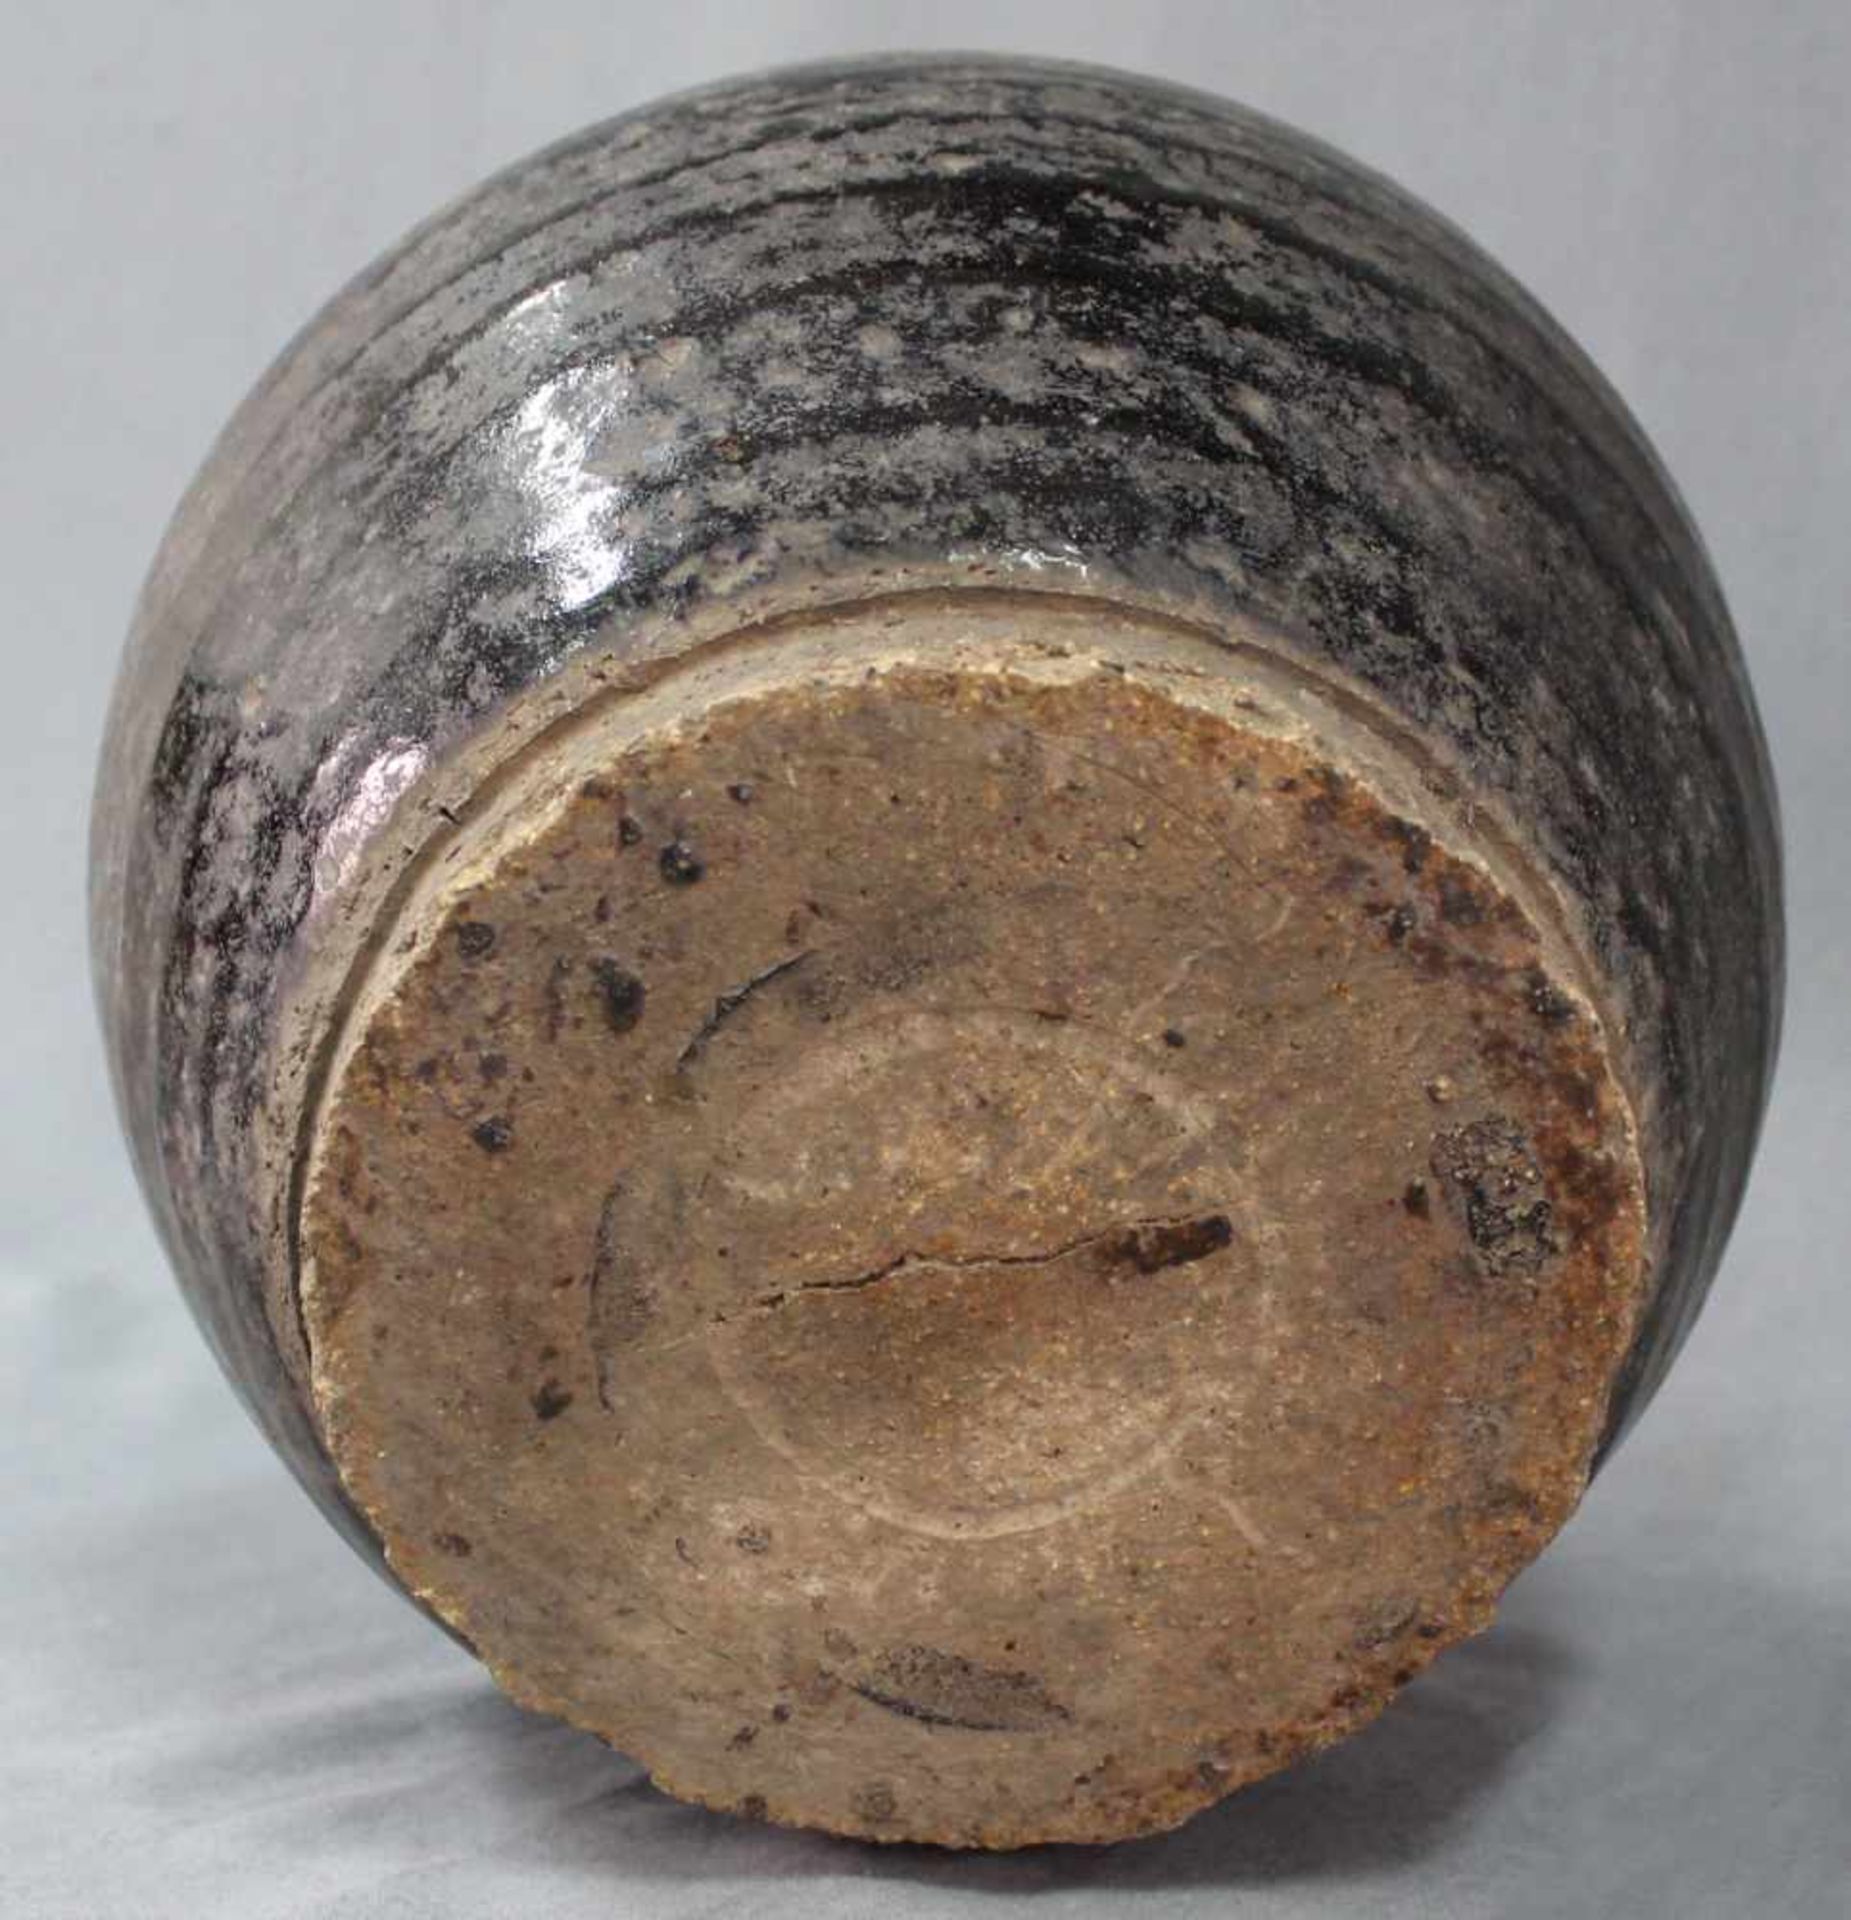 Bauchige Vase. Vorratsgefäß. Steingut. Schwarze Glasur. Wohl Zentralasien, antik.34 cm hoch.Vase. - Image 6 of 7